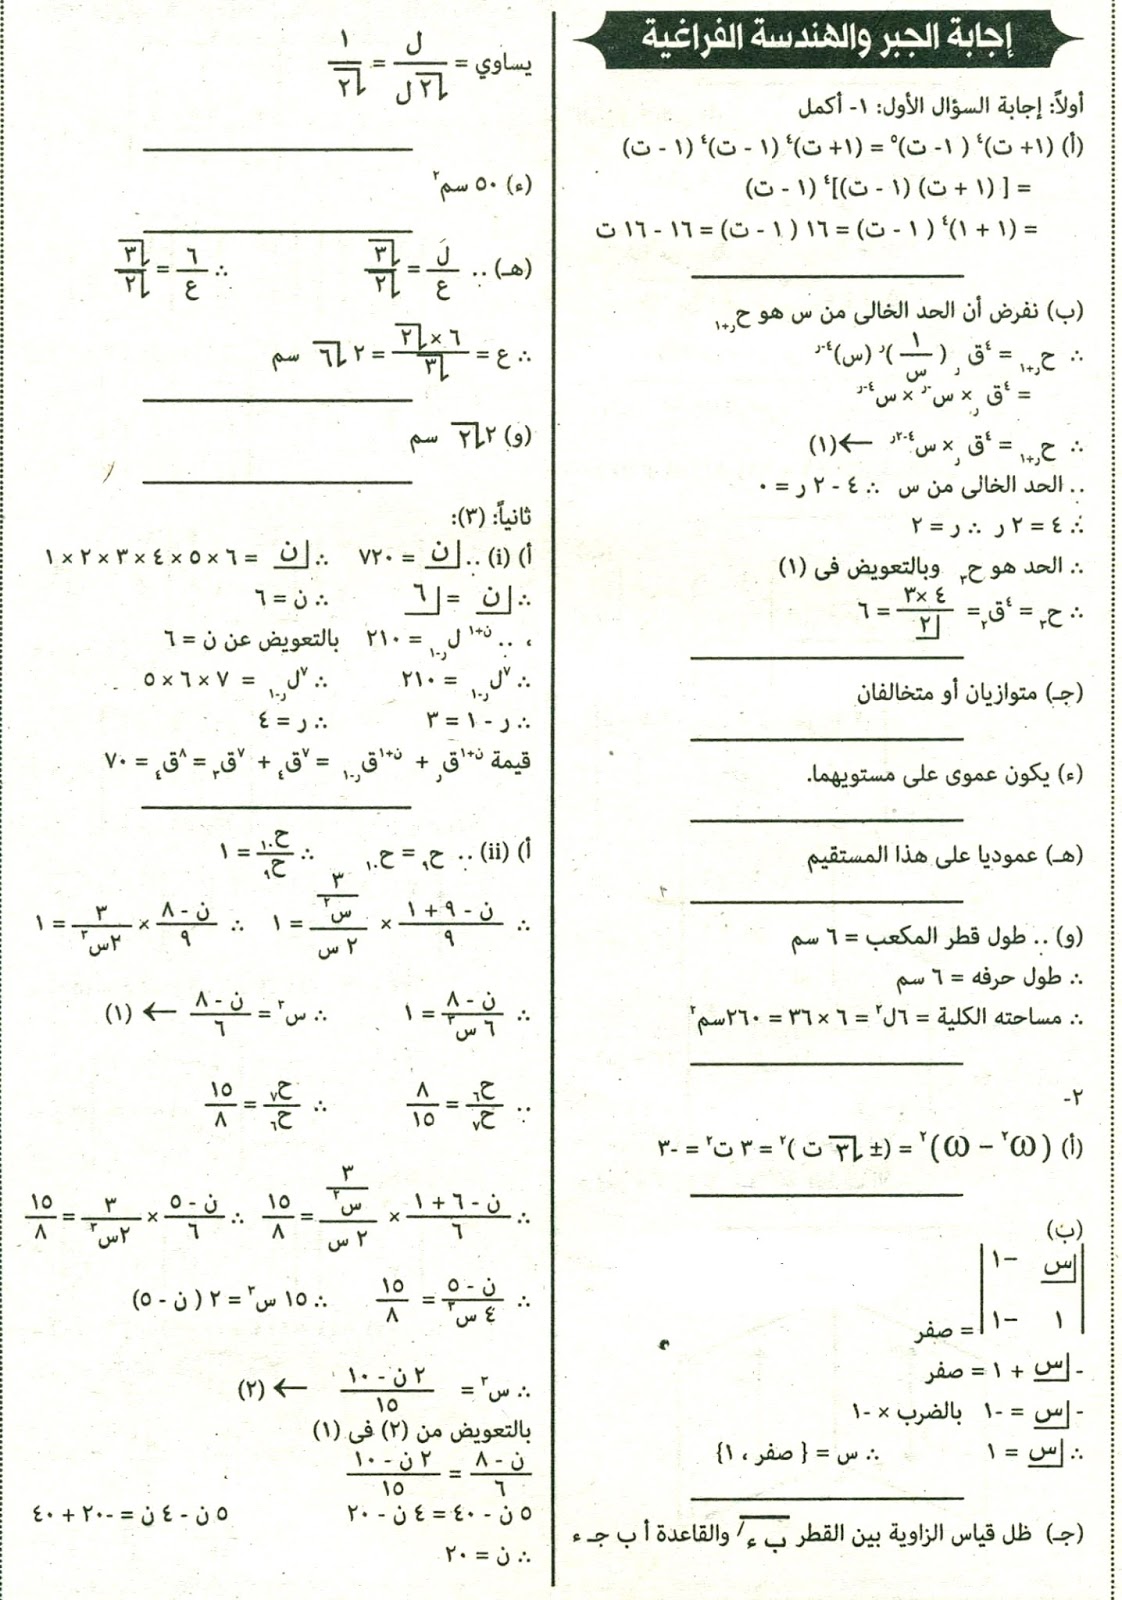 امتحان الجبر والهندسة الفراغية 2016 للثانوية العامة المصرية بالسودان 011